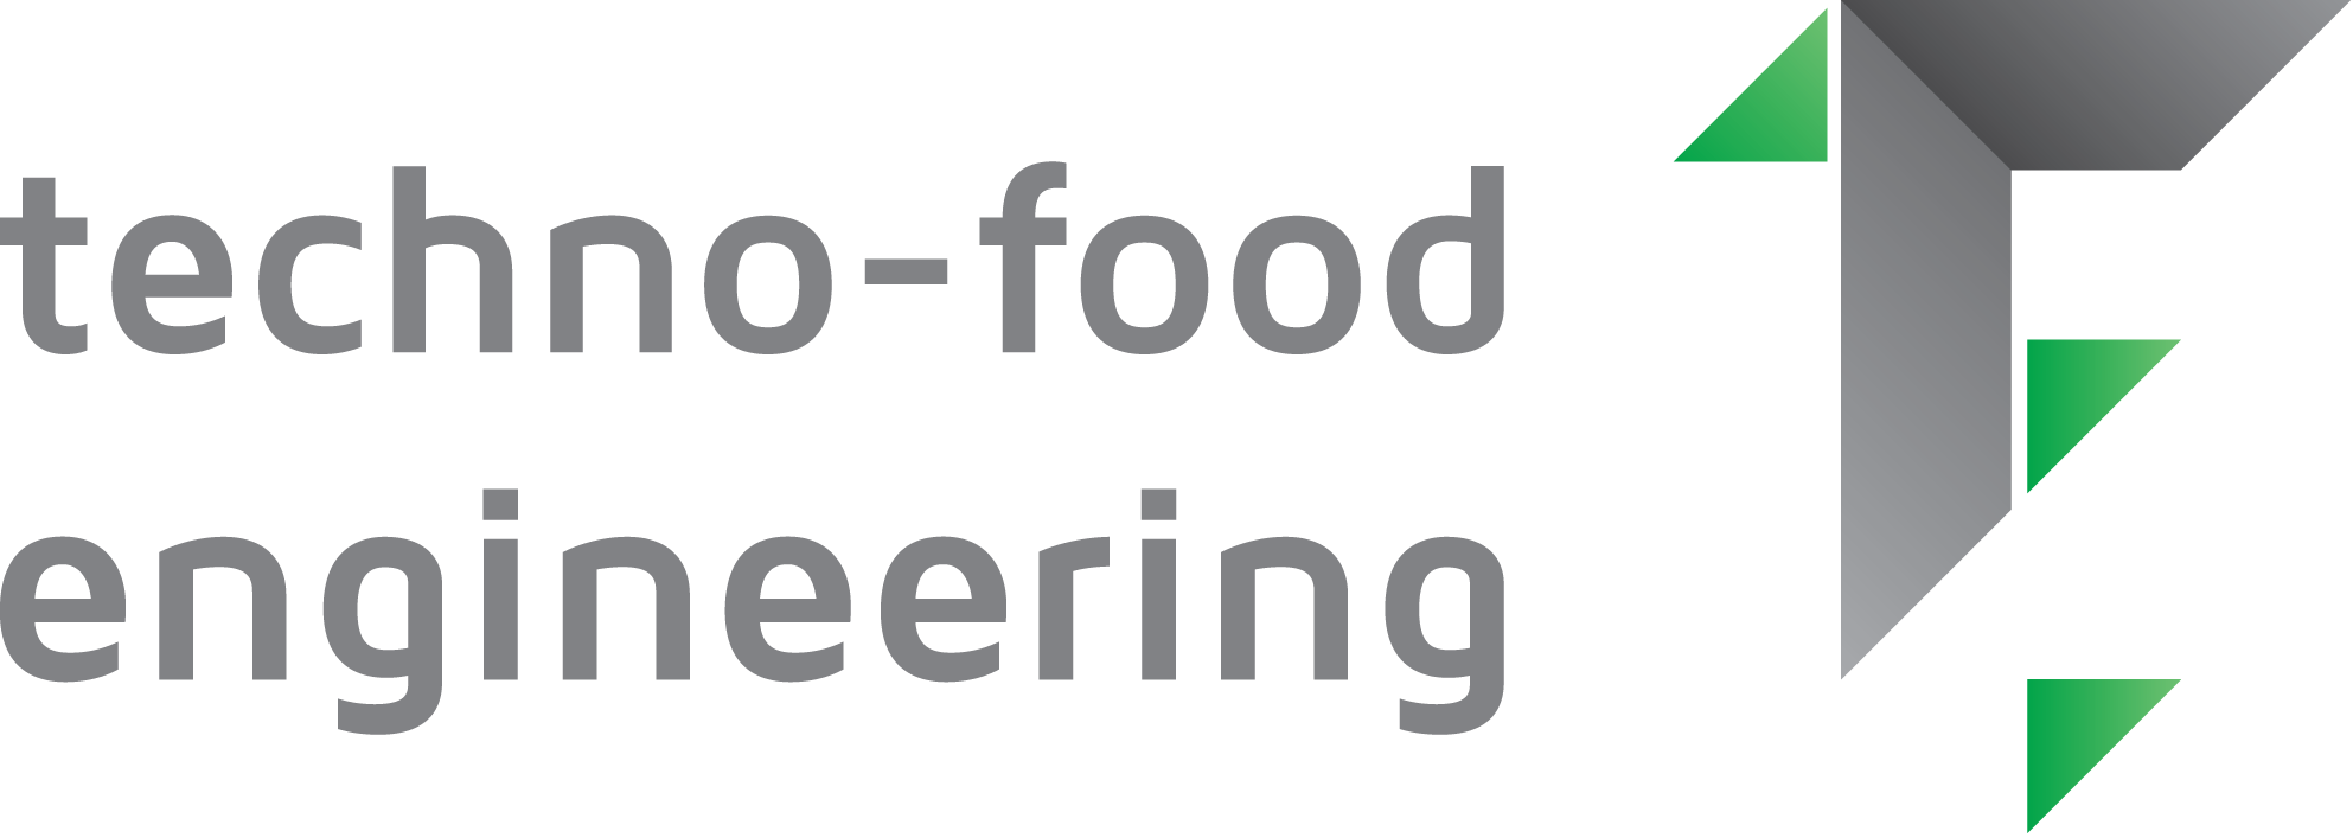 Techno Food Engineering